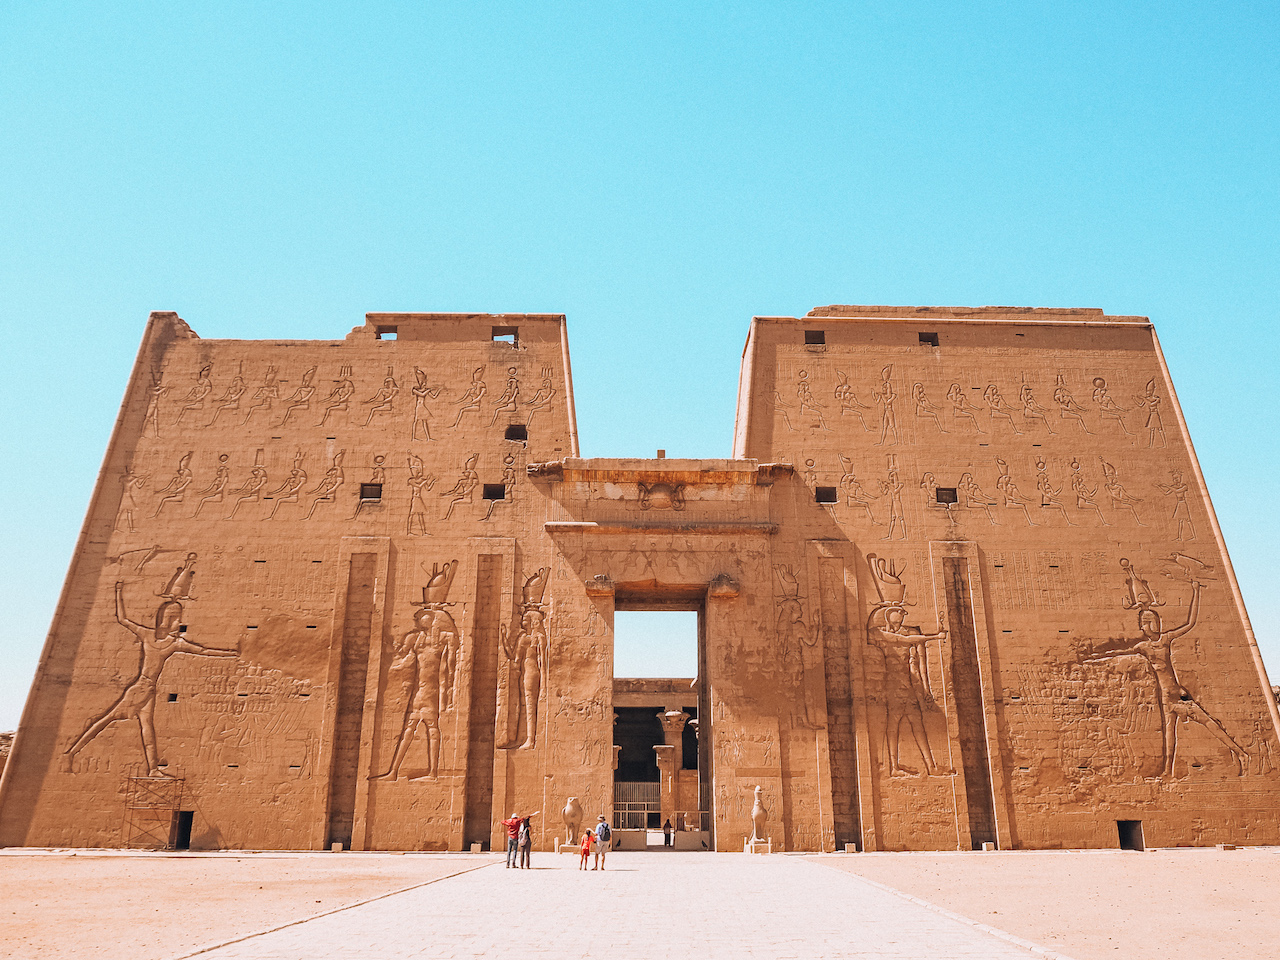 夏のエジプト旅行記 5日目 ナイル川クルーズでコムオンボ ホルス神殿観光 Sao Memo